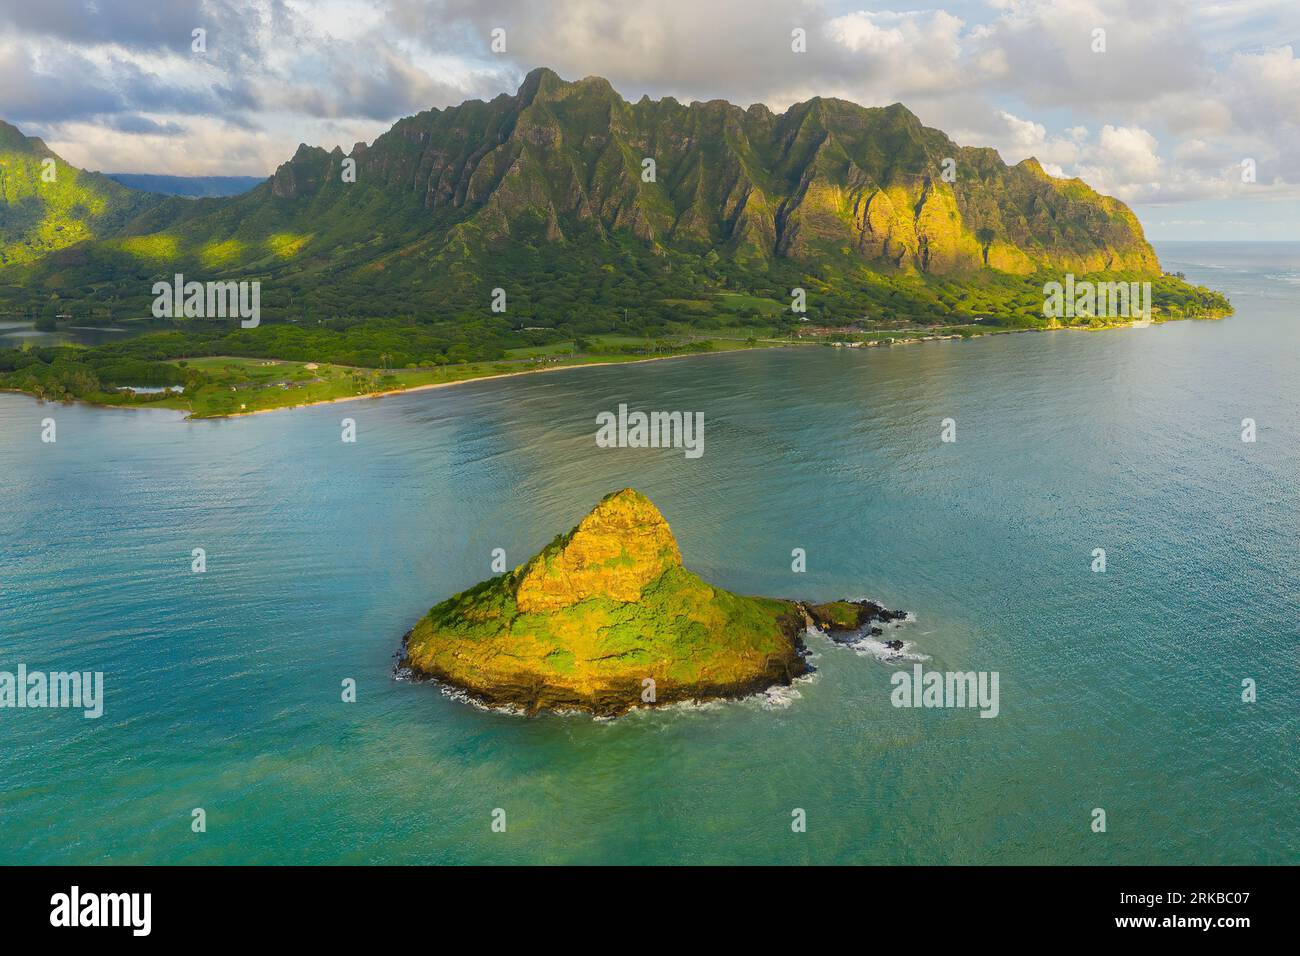 The Chinaman's Hat Island and coast of Oahu, Hawaii, Pacific Ocean, Hawaiian Islands Stock Photo